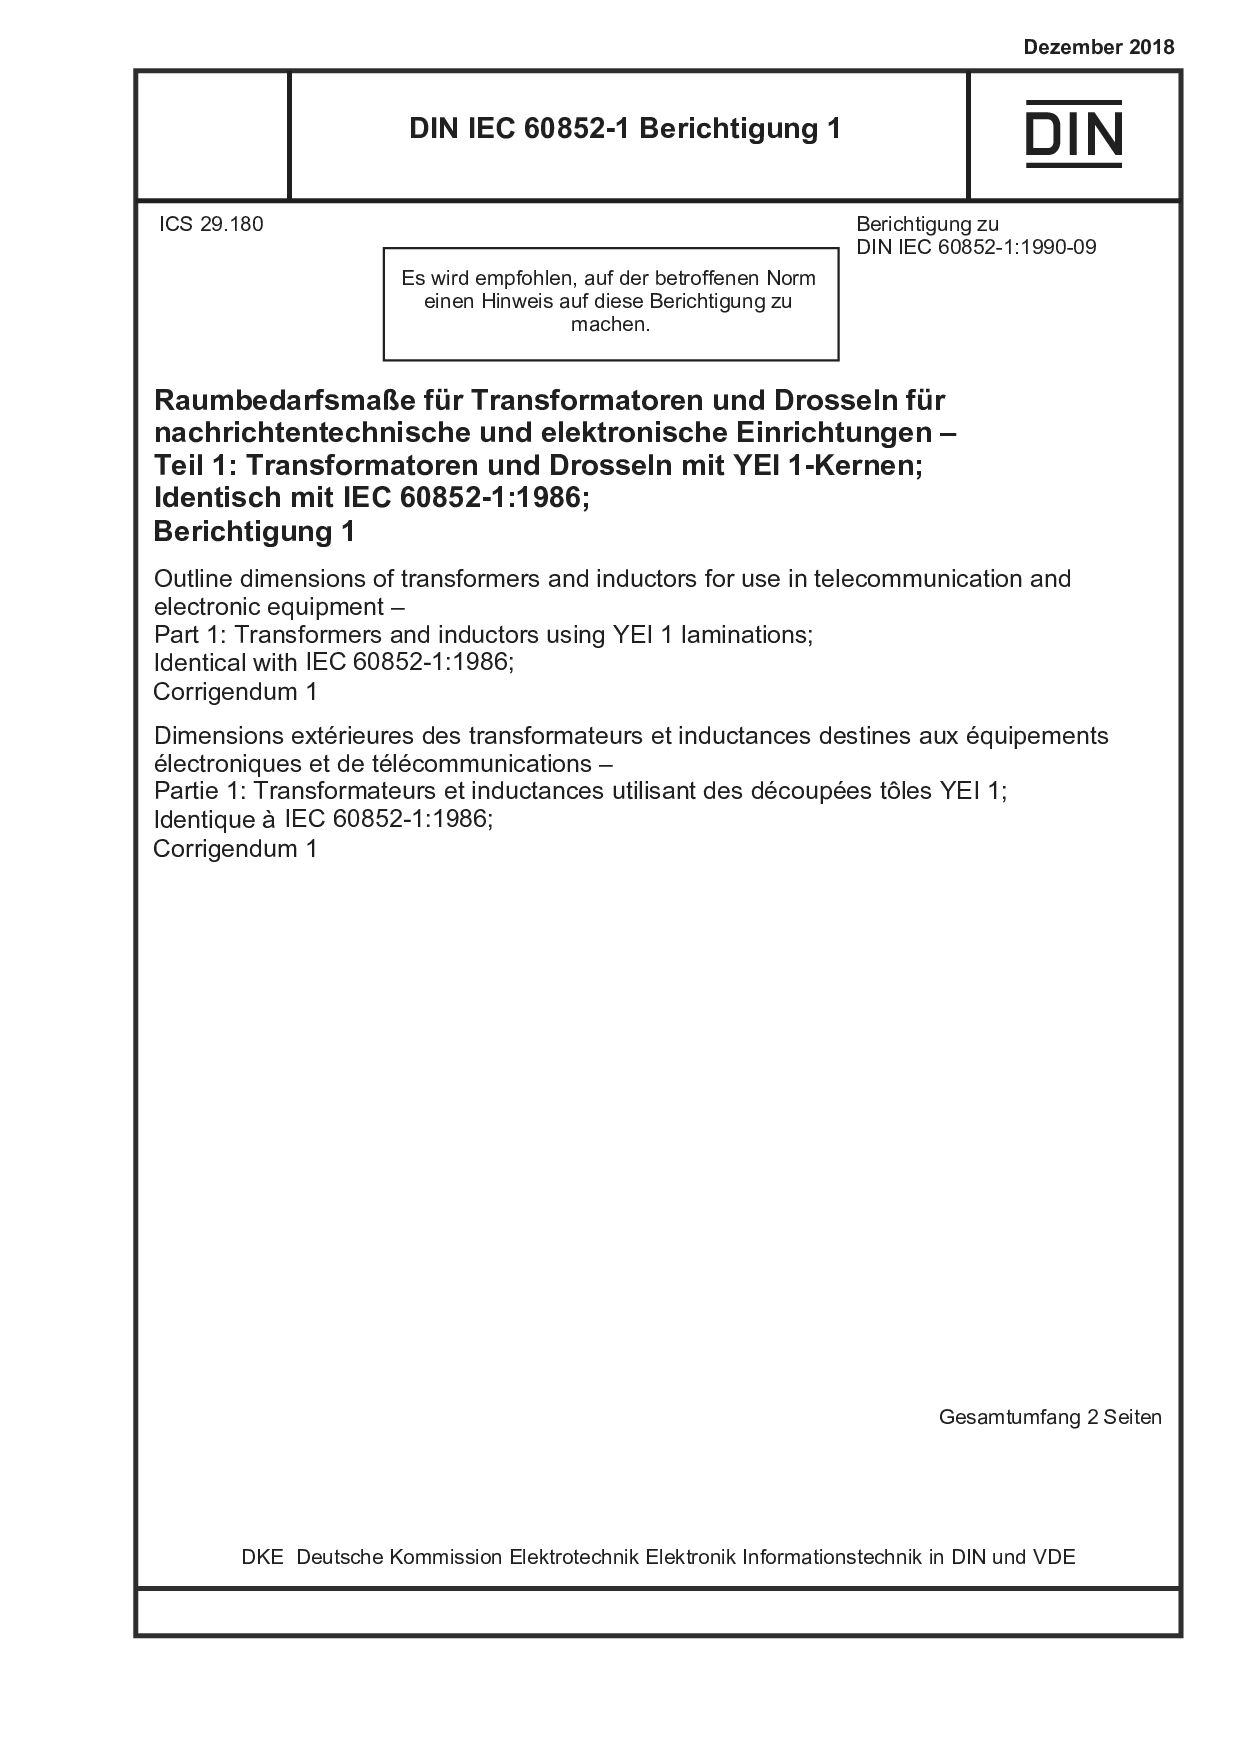 DIN IEC 60852-1 Berichtigung 1:2018